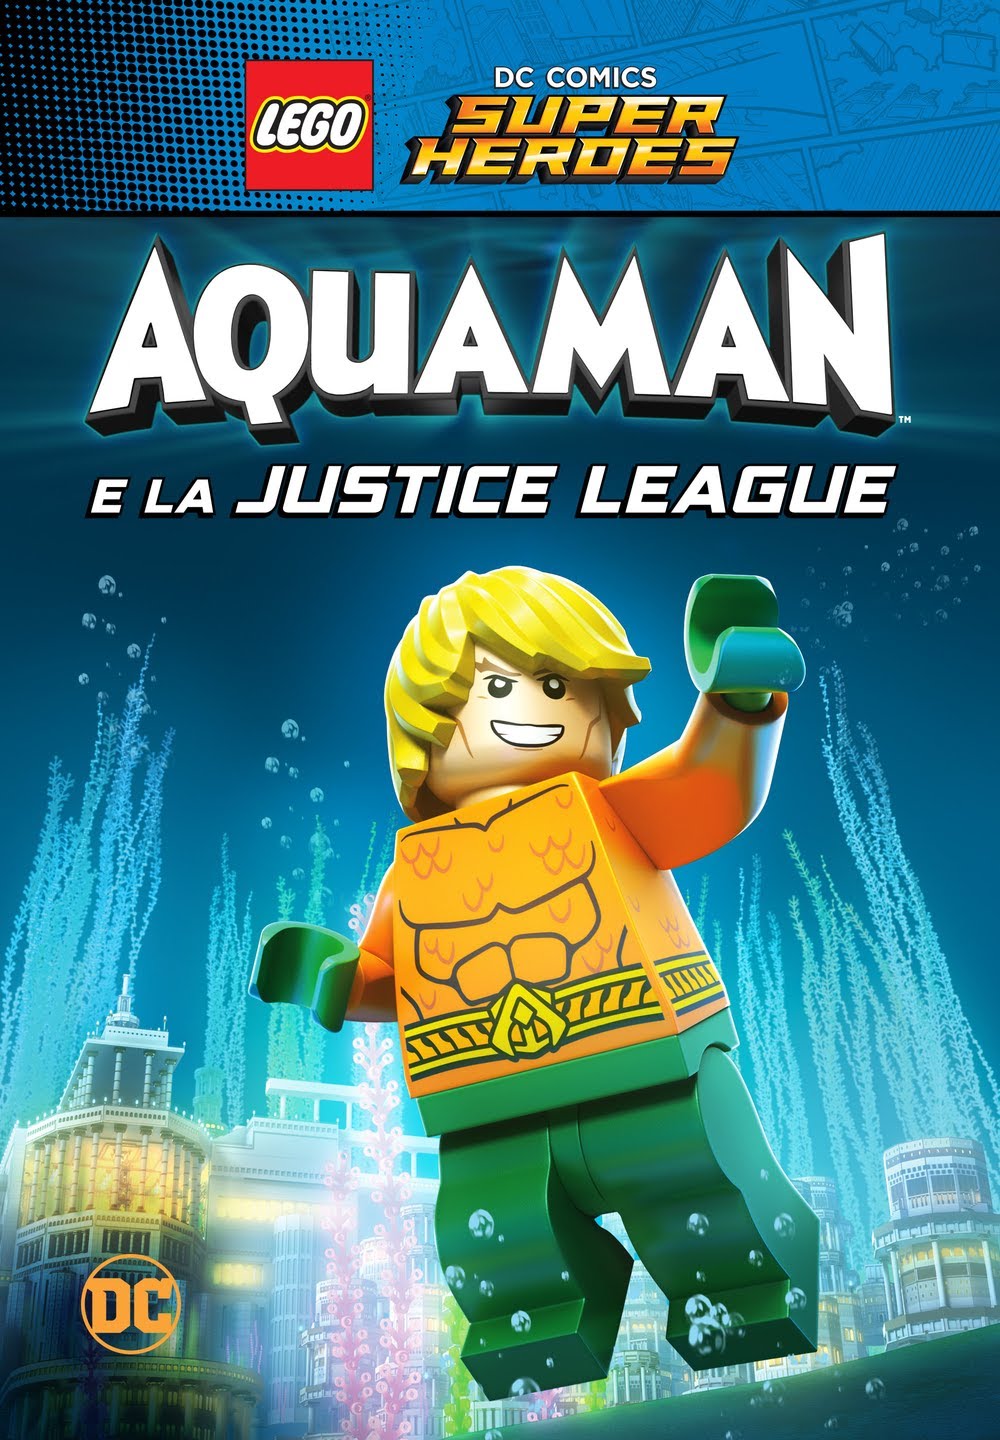 LEGO DC Super Heroes: Aquaman e la Justice League [HD] (2018)